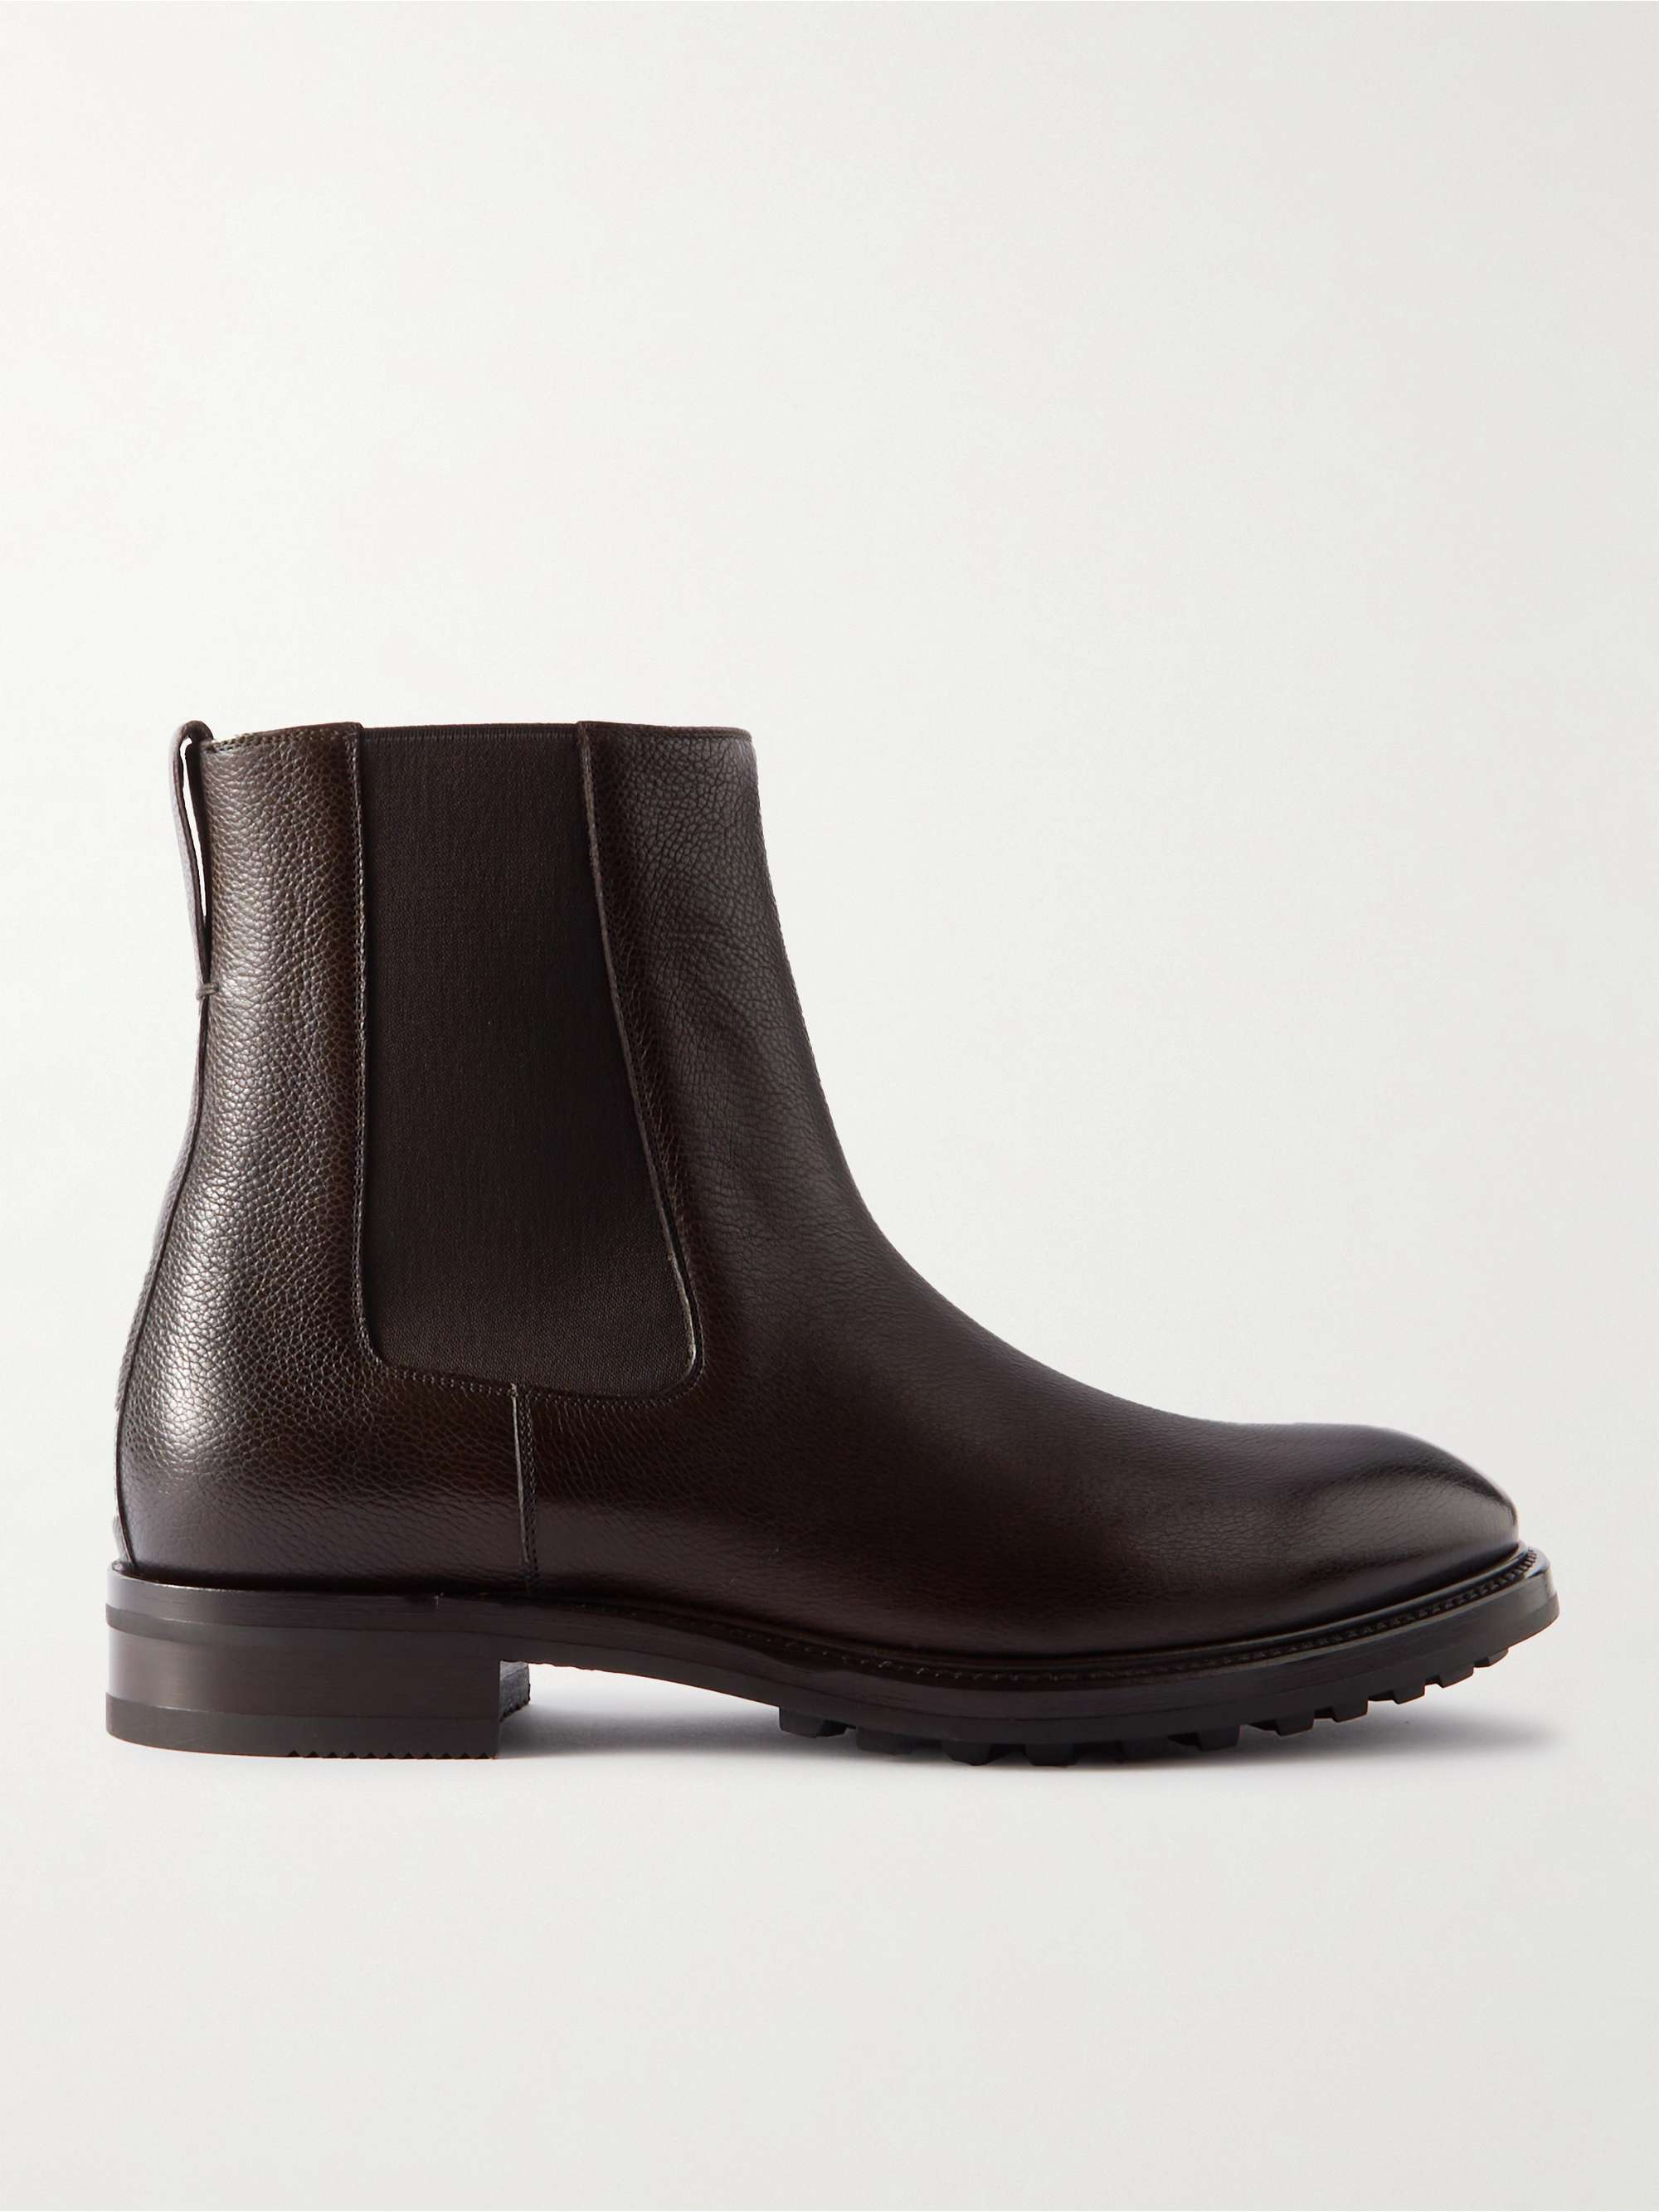 Dark brown Stuart Full-Grain Leather Chelsea Boots | TOM FORD | MR PORTER